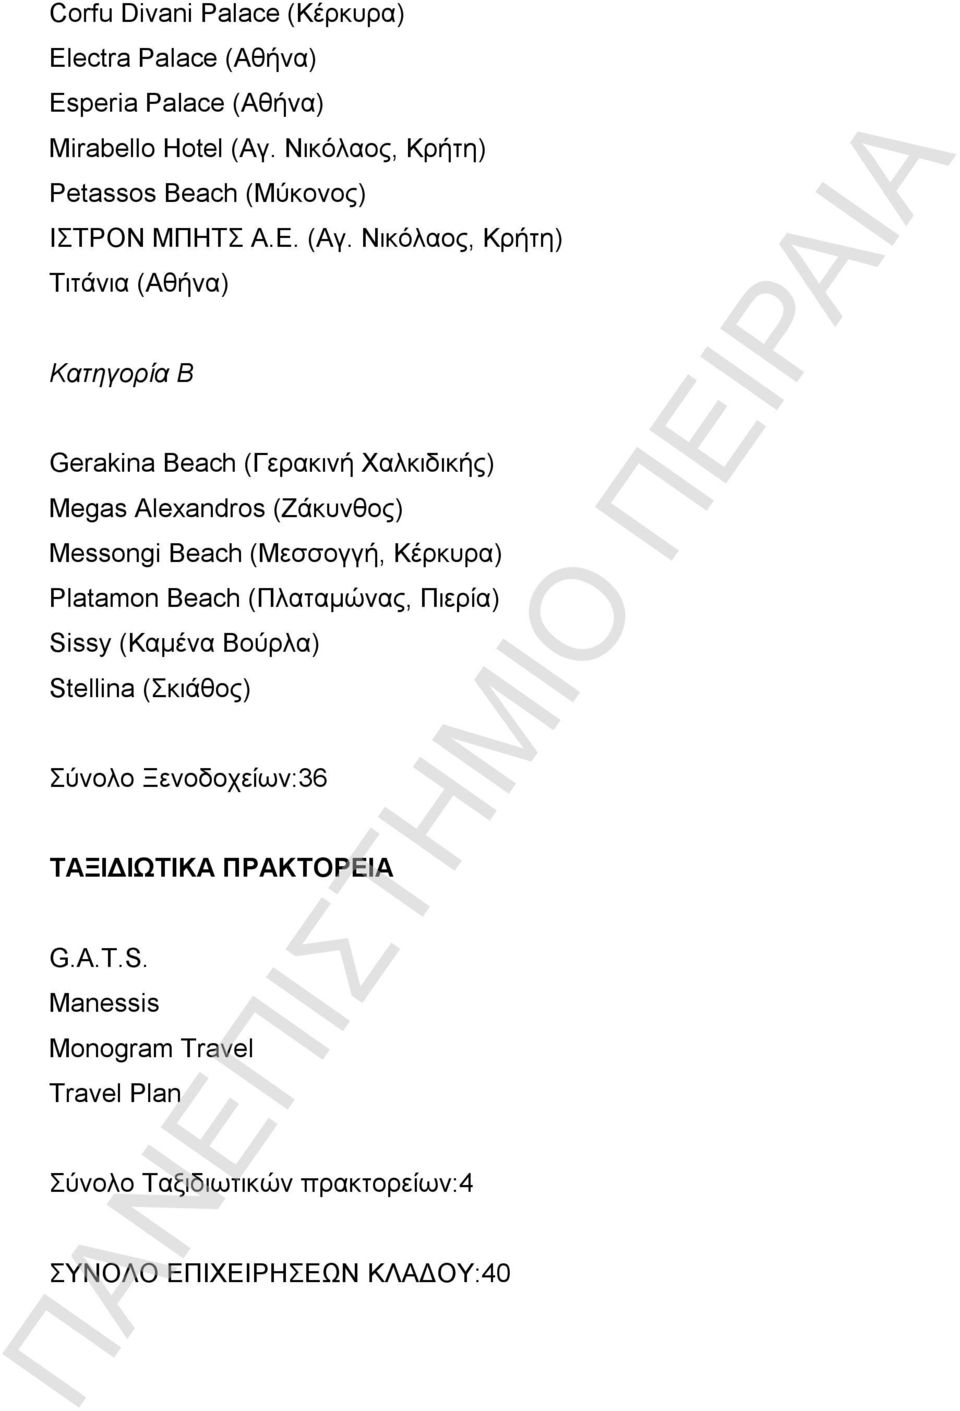 Νικόλαος, Κρήτη) Τιτάνια (Αθήνα) Κατηγορία Β Gerakina Beach (Γερακινή Χαλκιδικής) Megas Alexandros (Ζάκυνθος) Messongi Beach